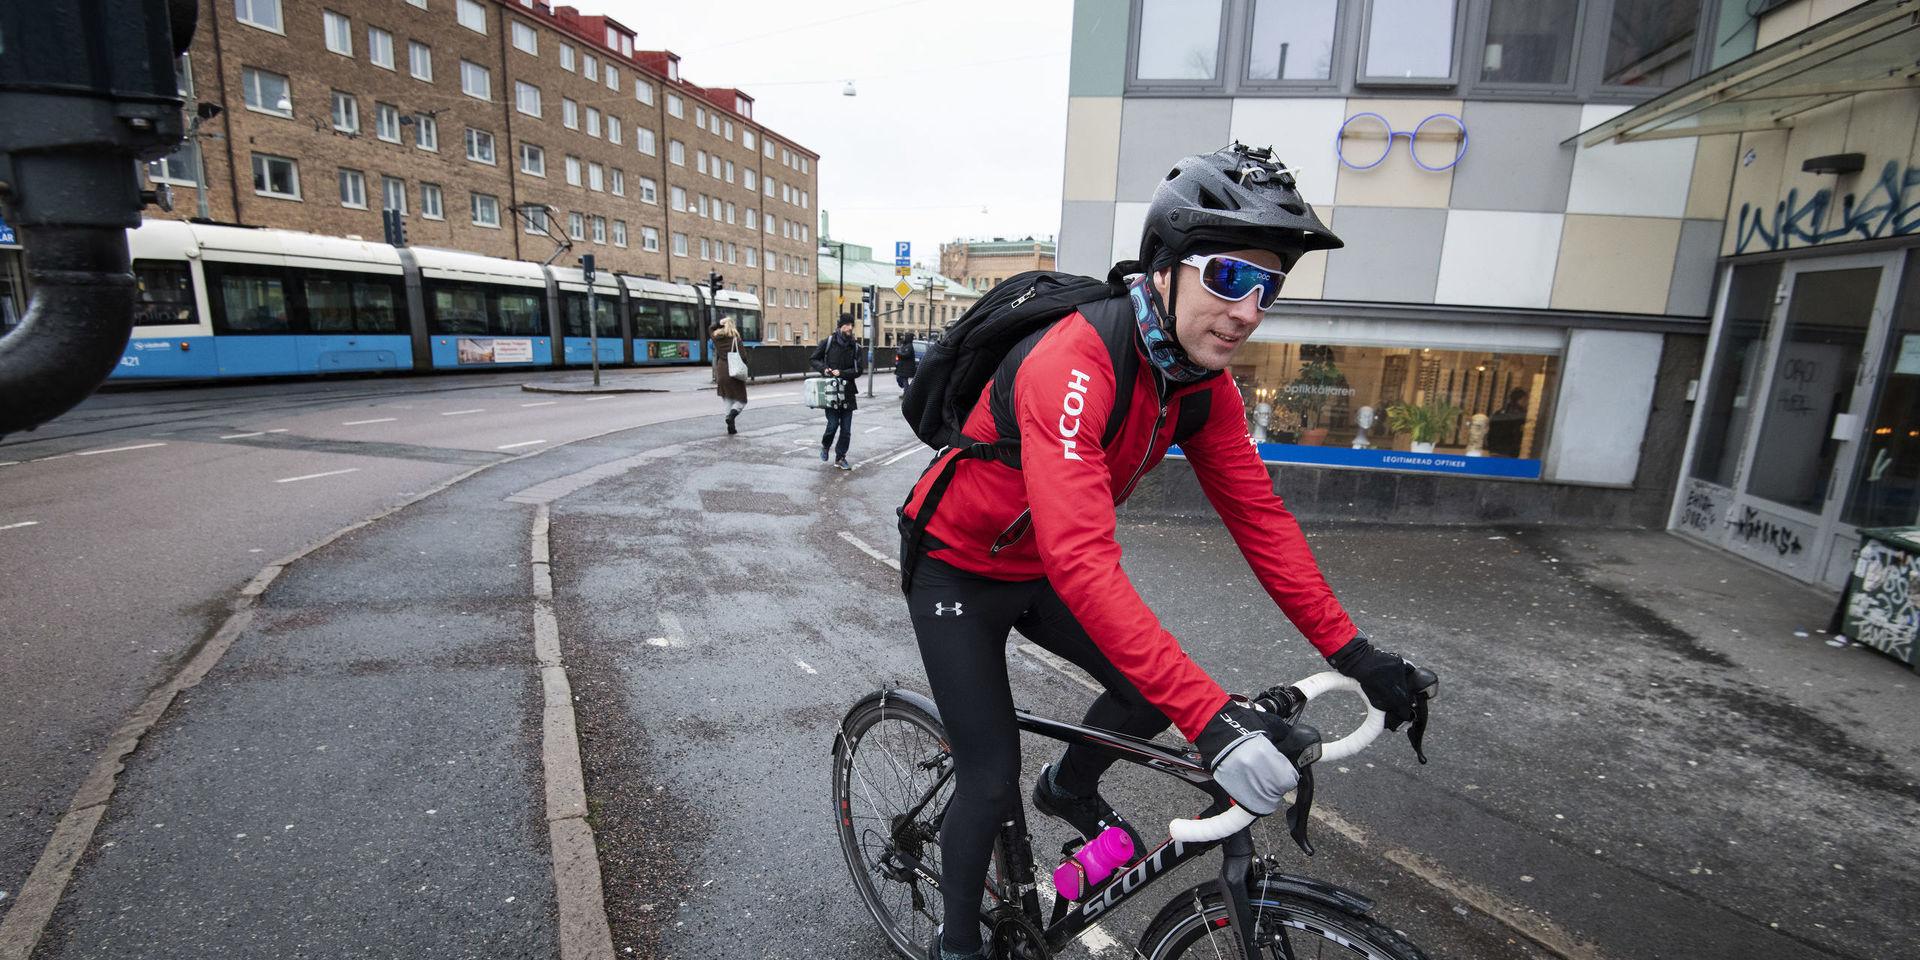 Otydligt, dåligt skyltat och mycket mixade zoner för gående och cyklister, sammanfattar Joel Klingspor.